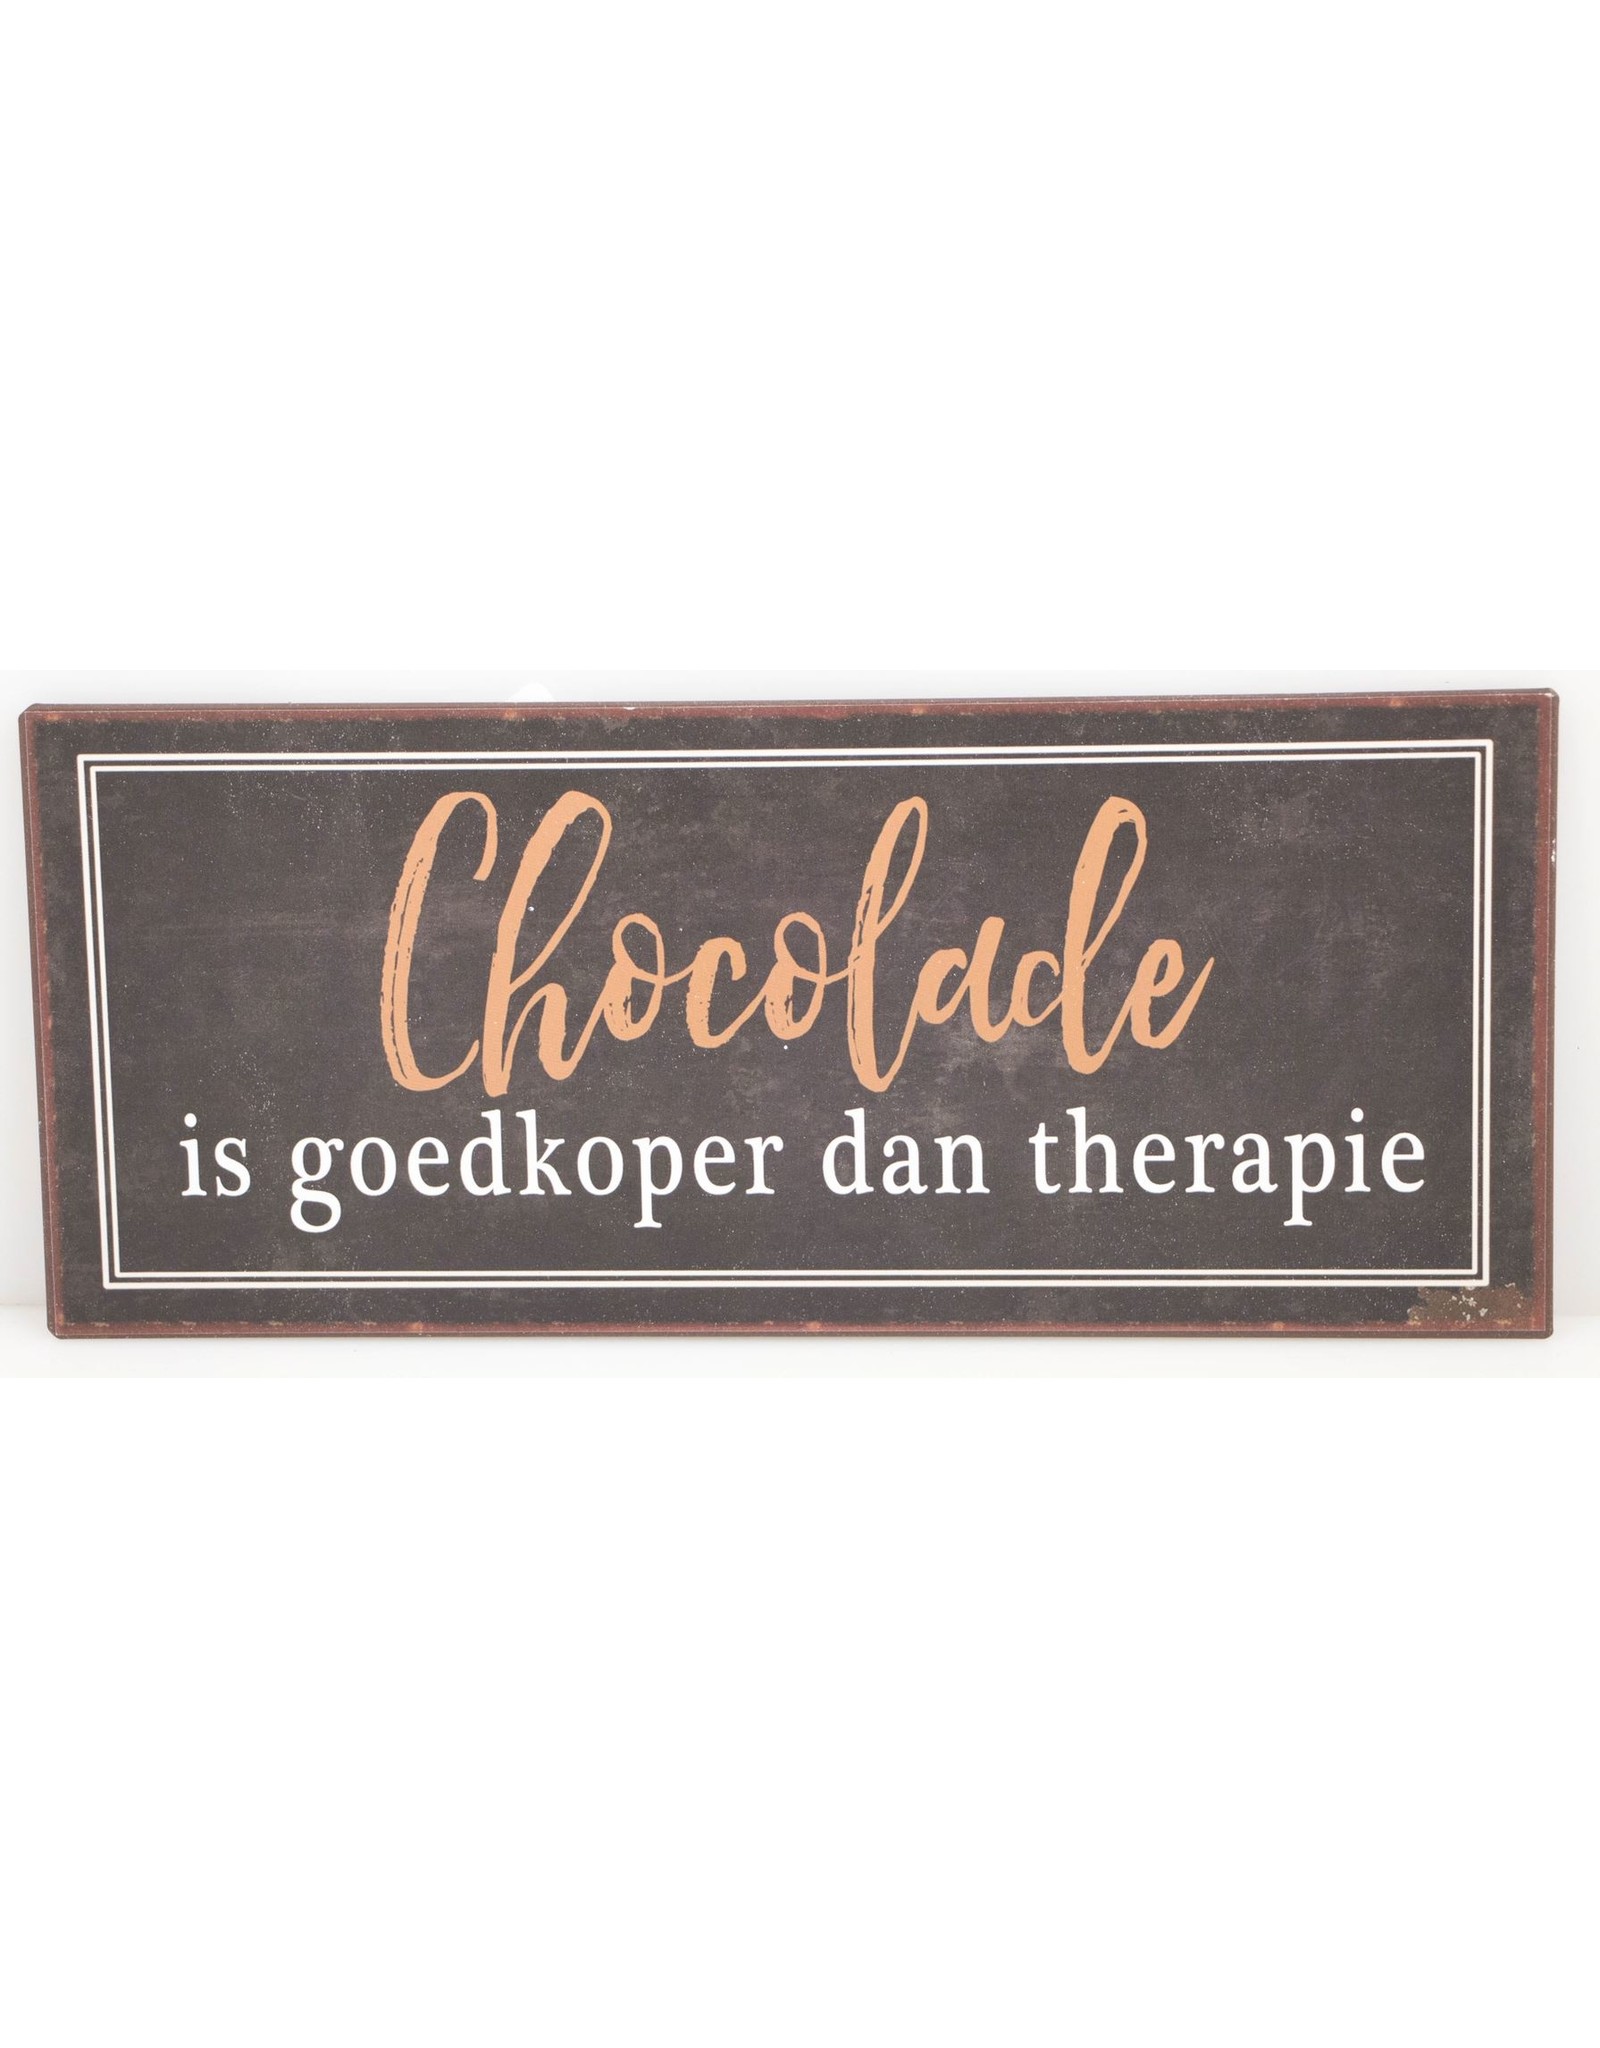 Chocolade is goedkoper dan therapie